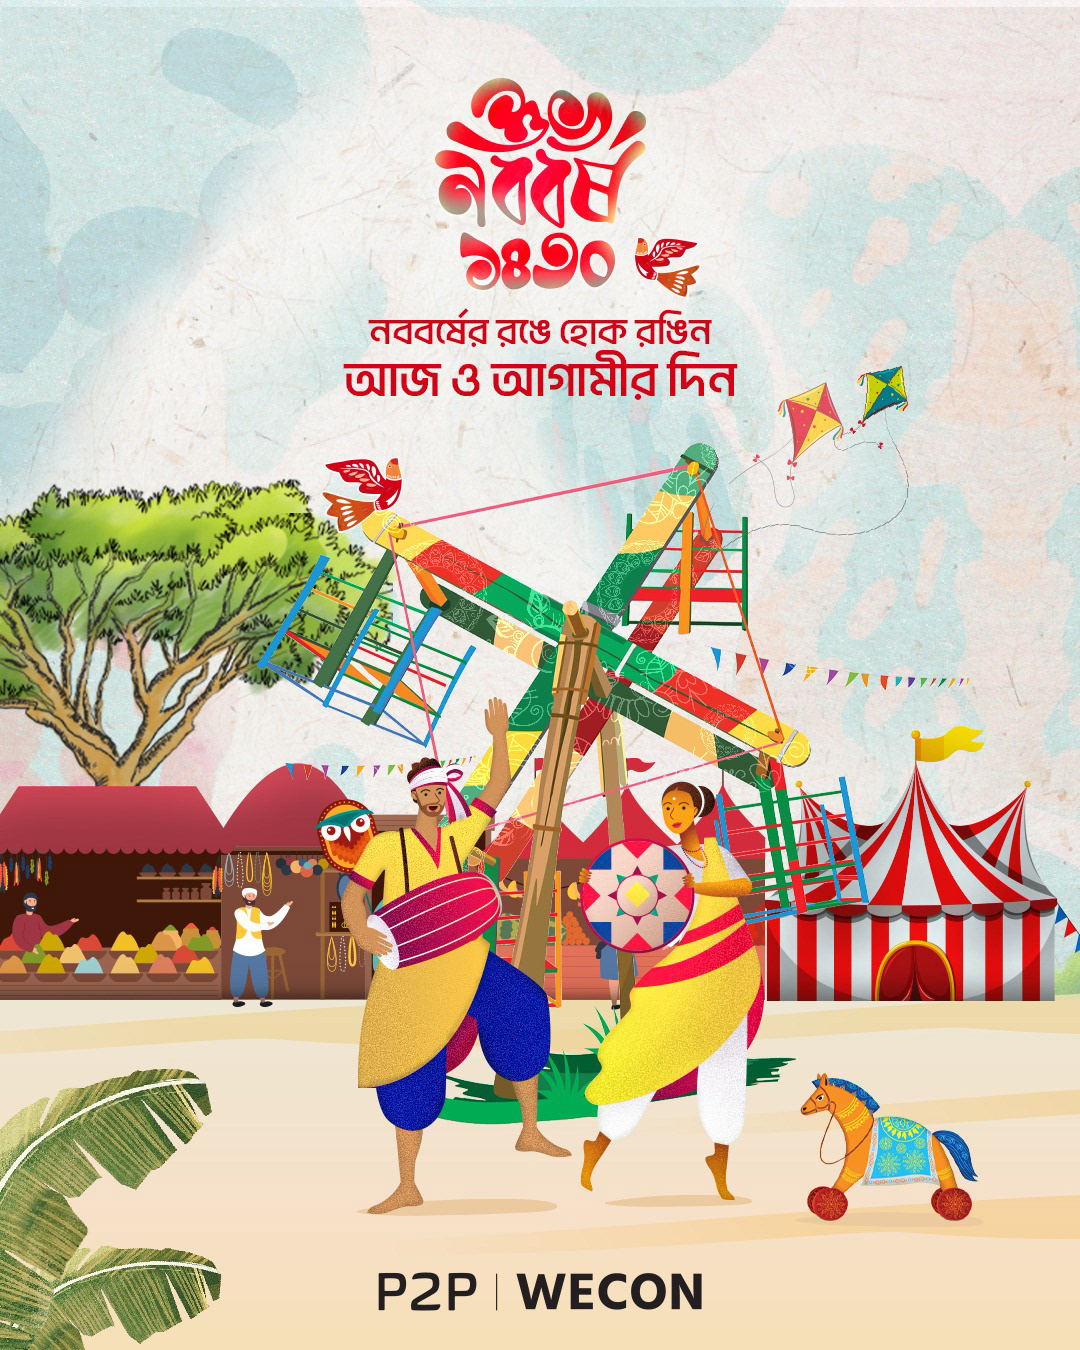 bangla new year Bangla Typography Bangladesh boishakh Digital Art  ILLUSTRATION  Pohela Boishakh পহেলা বৈশাখ বাংলা নববর্ষ শুভ নববর্ষ